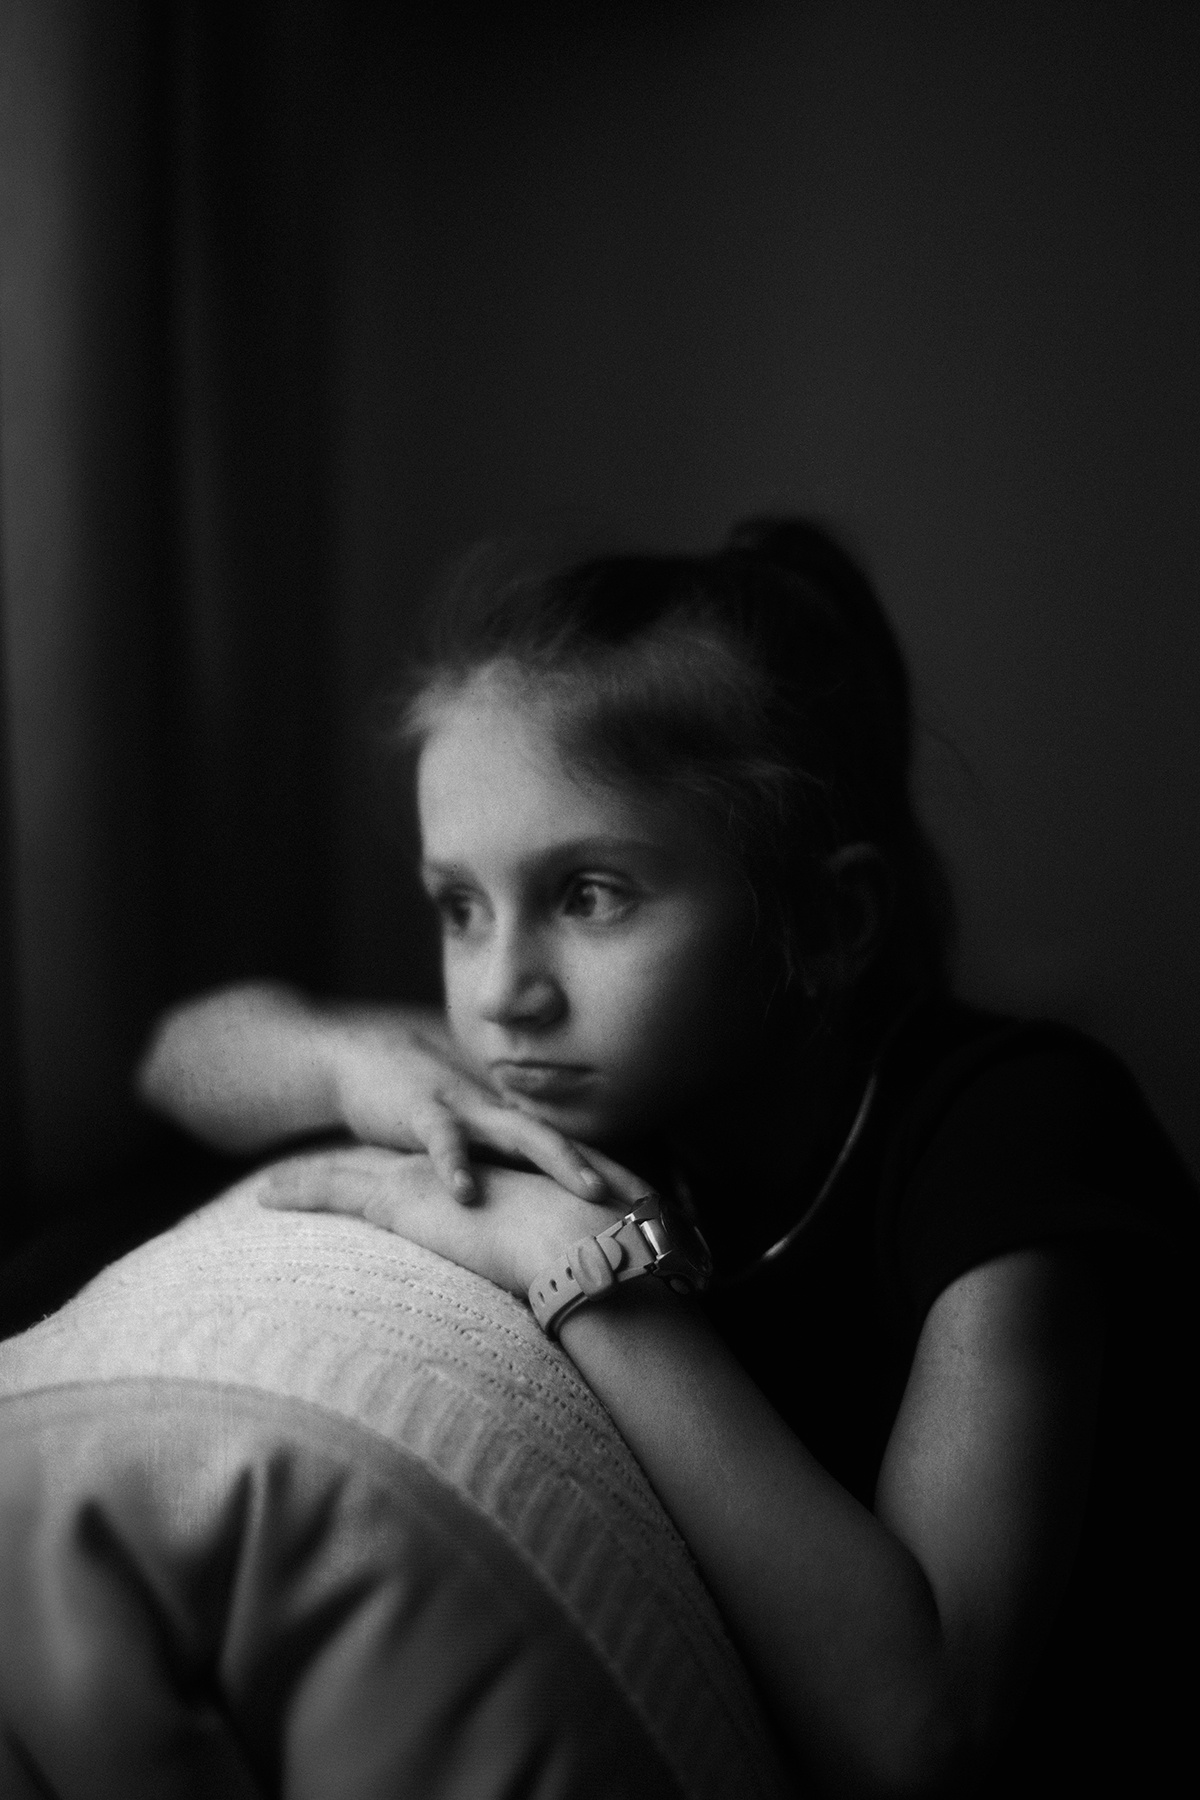 Евфросиния ребенок девочка детское фото семейное чернобелое черно белый портрет